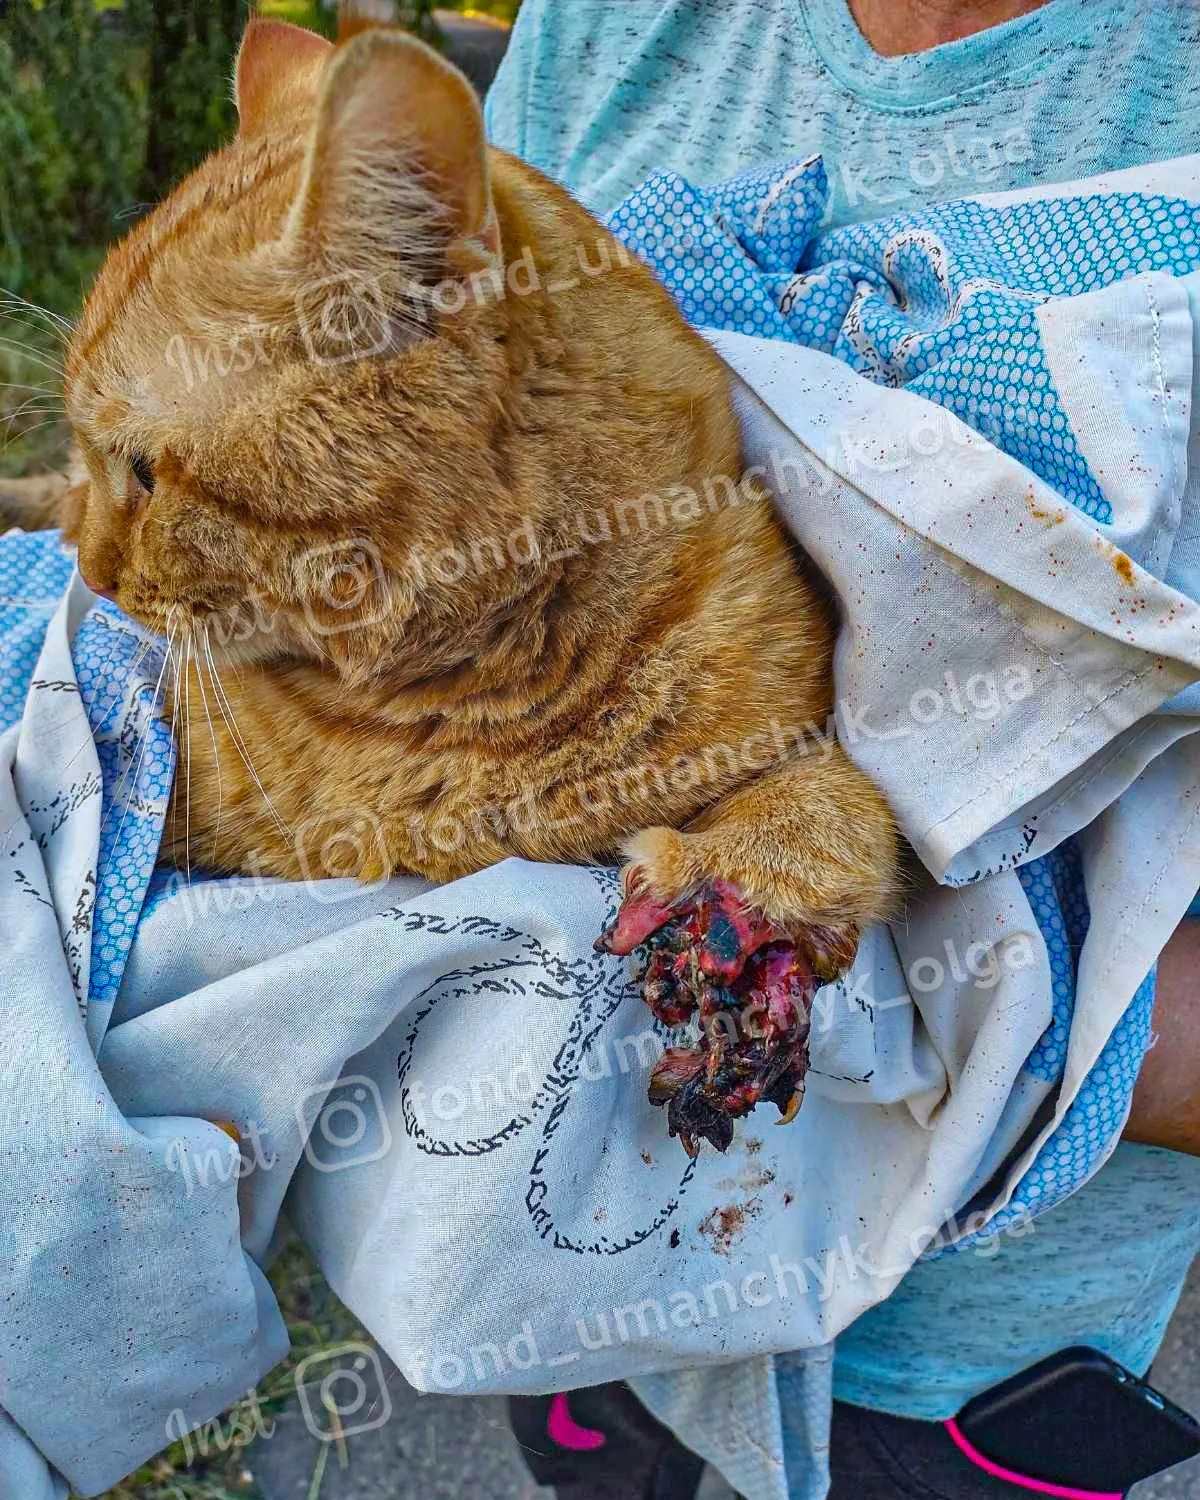 Новости Днепра про Втратив лапку під колесами потяга: у Дніпрі допомоги потребує травмований кіт Янтарик